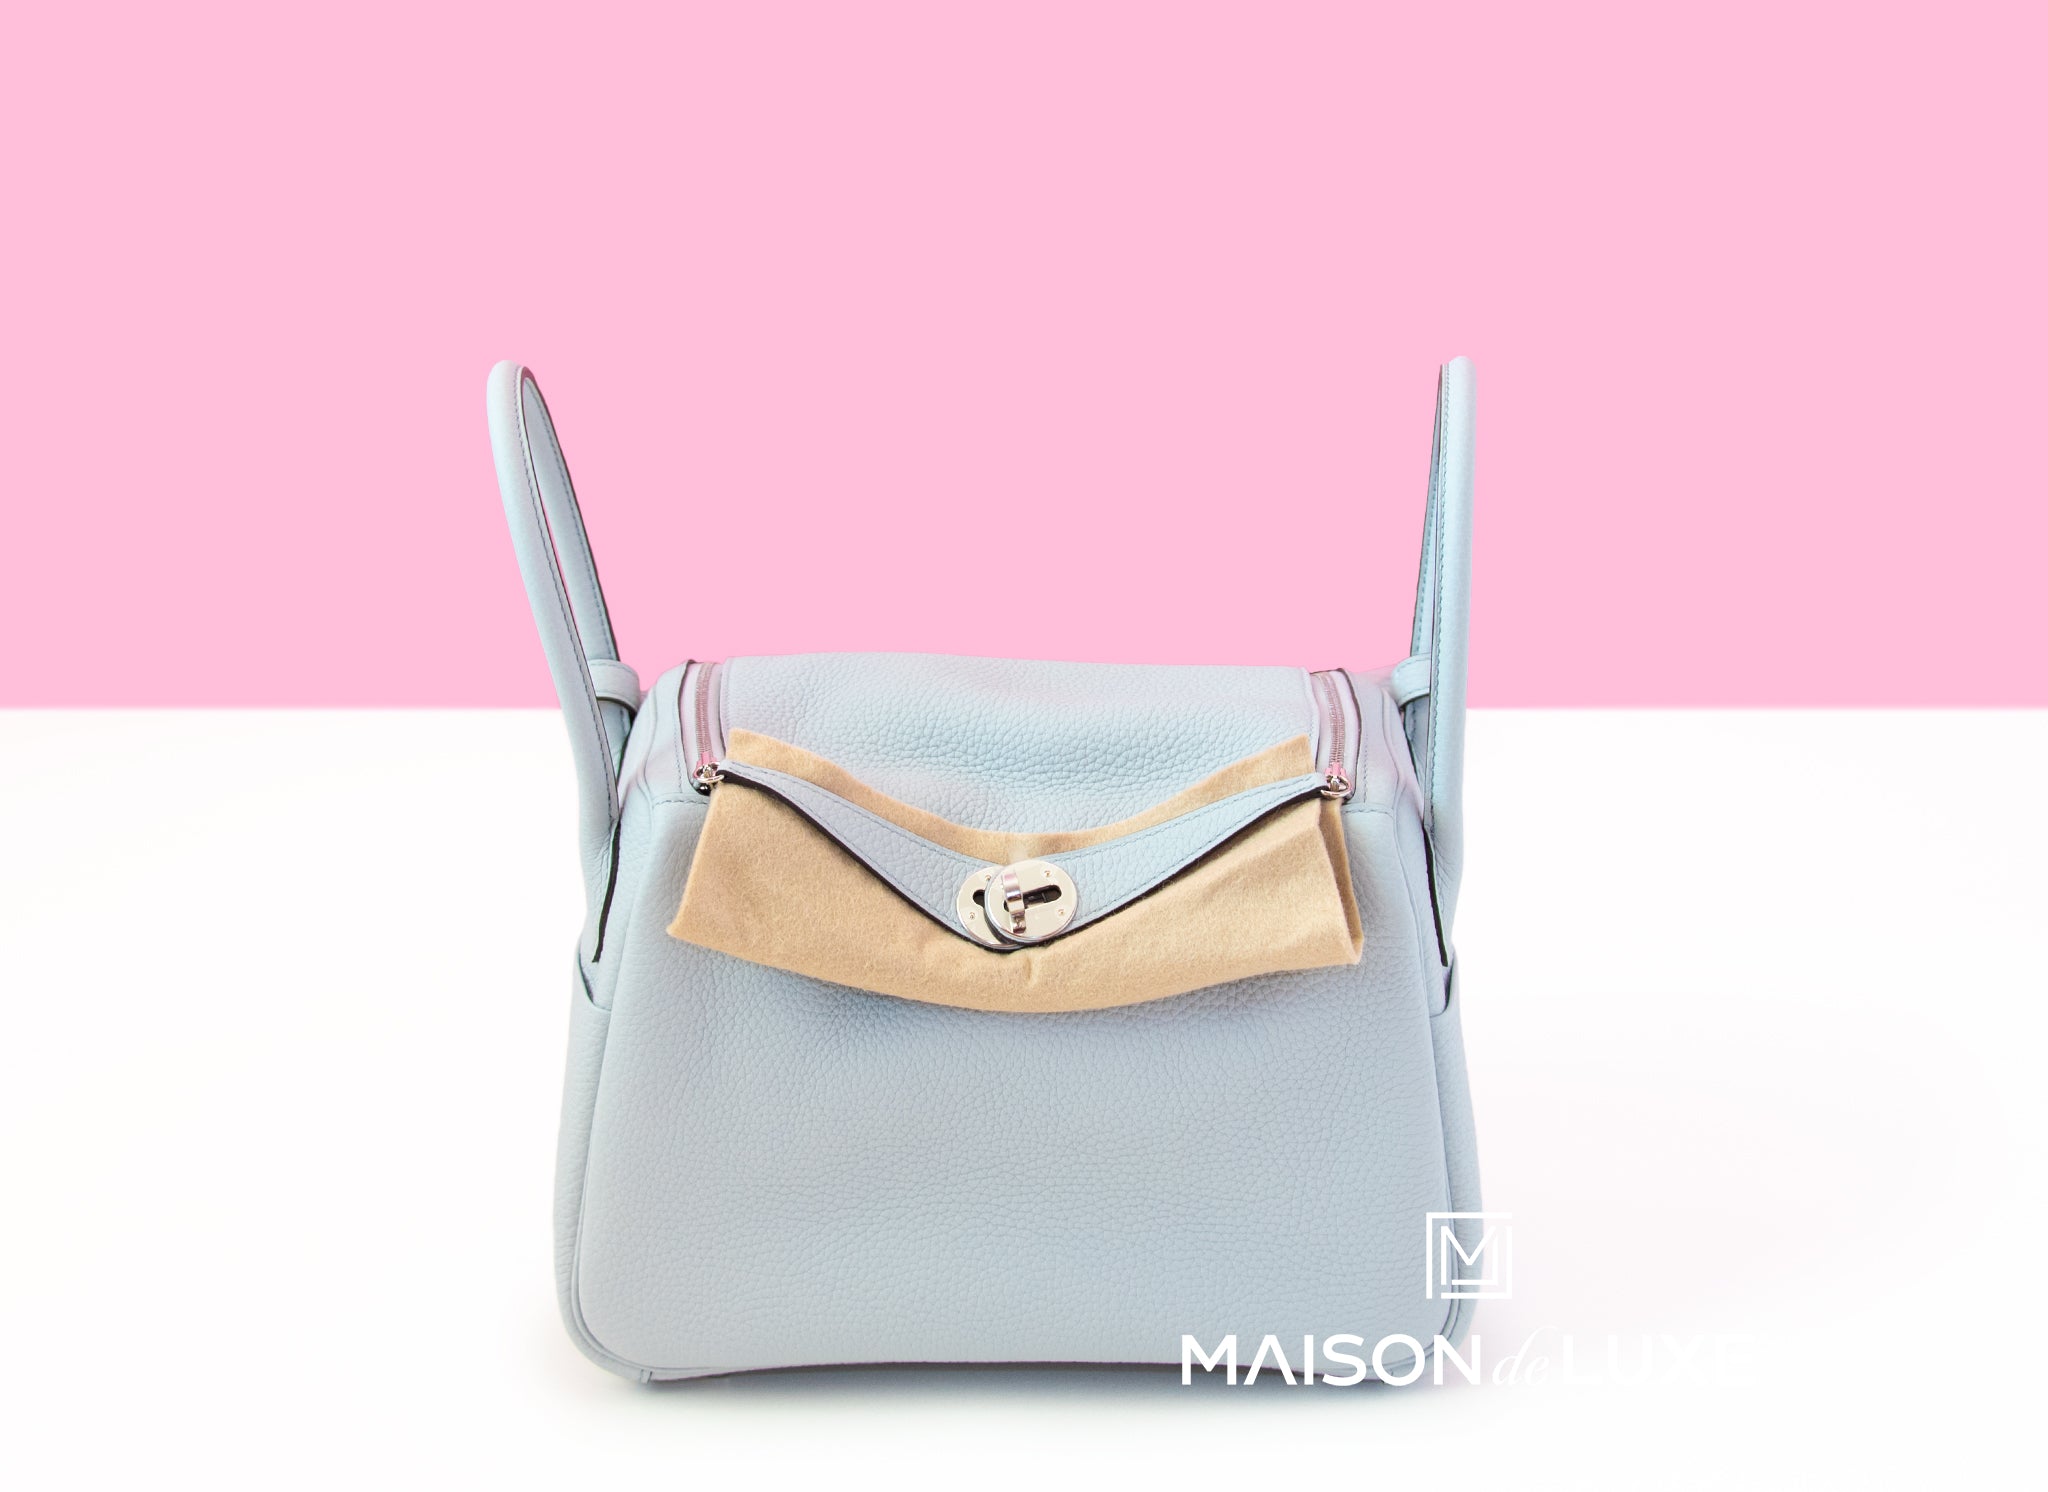 Hermes Blue Pale Clemence Lindy 26 Handbag Bag – MAISON de LUXE